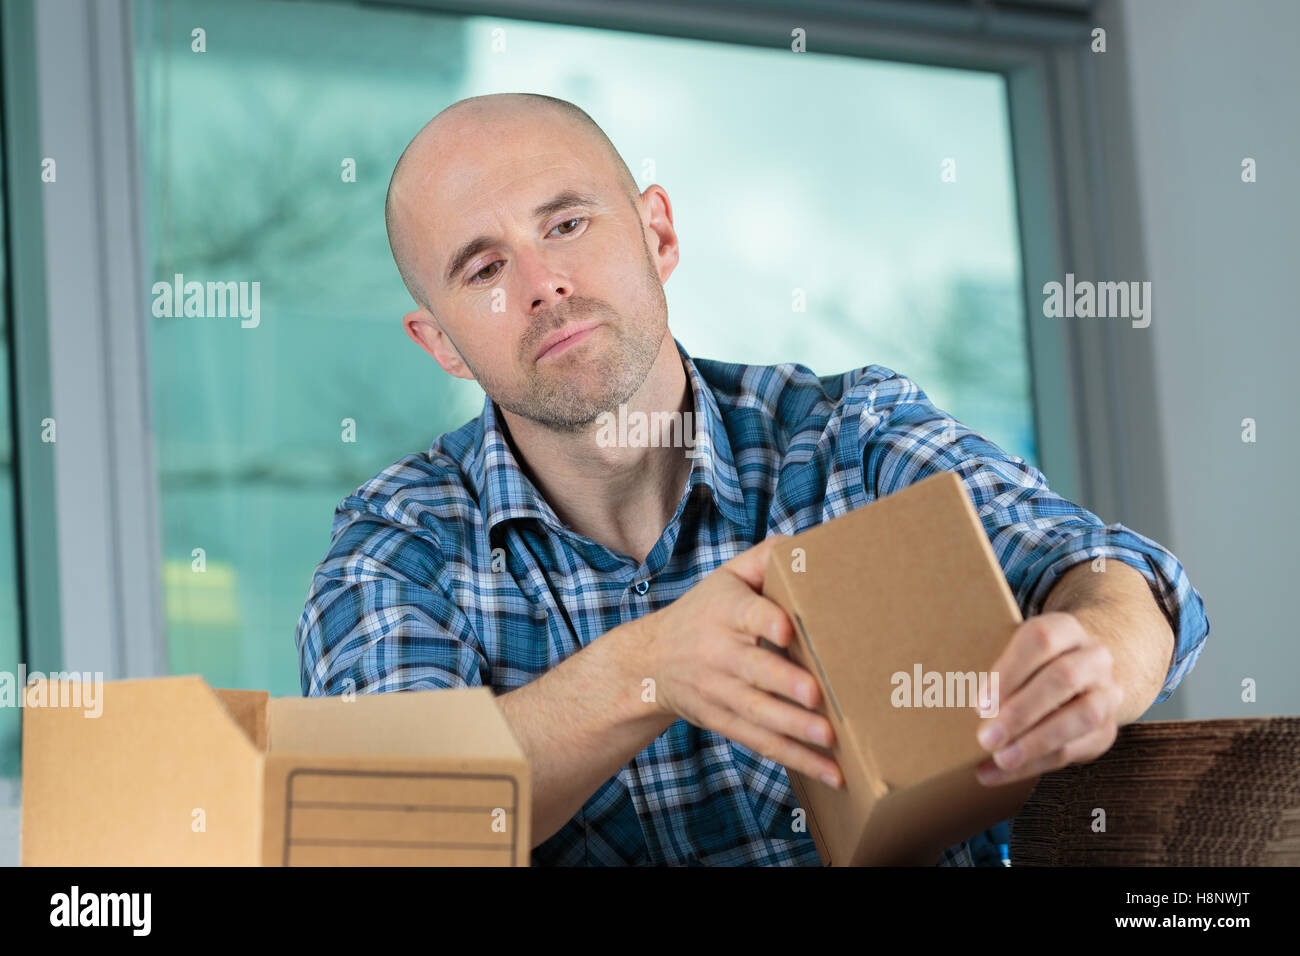 50 cajas de cartón corrugado con ventana a granel, cajas de